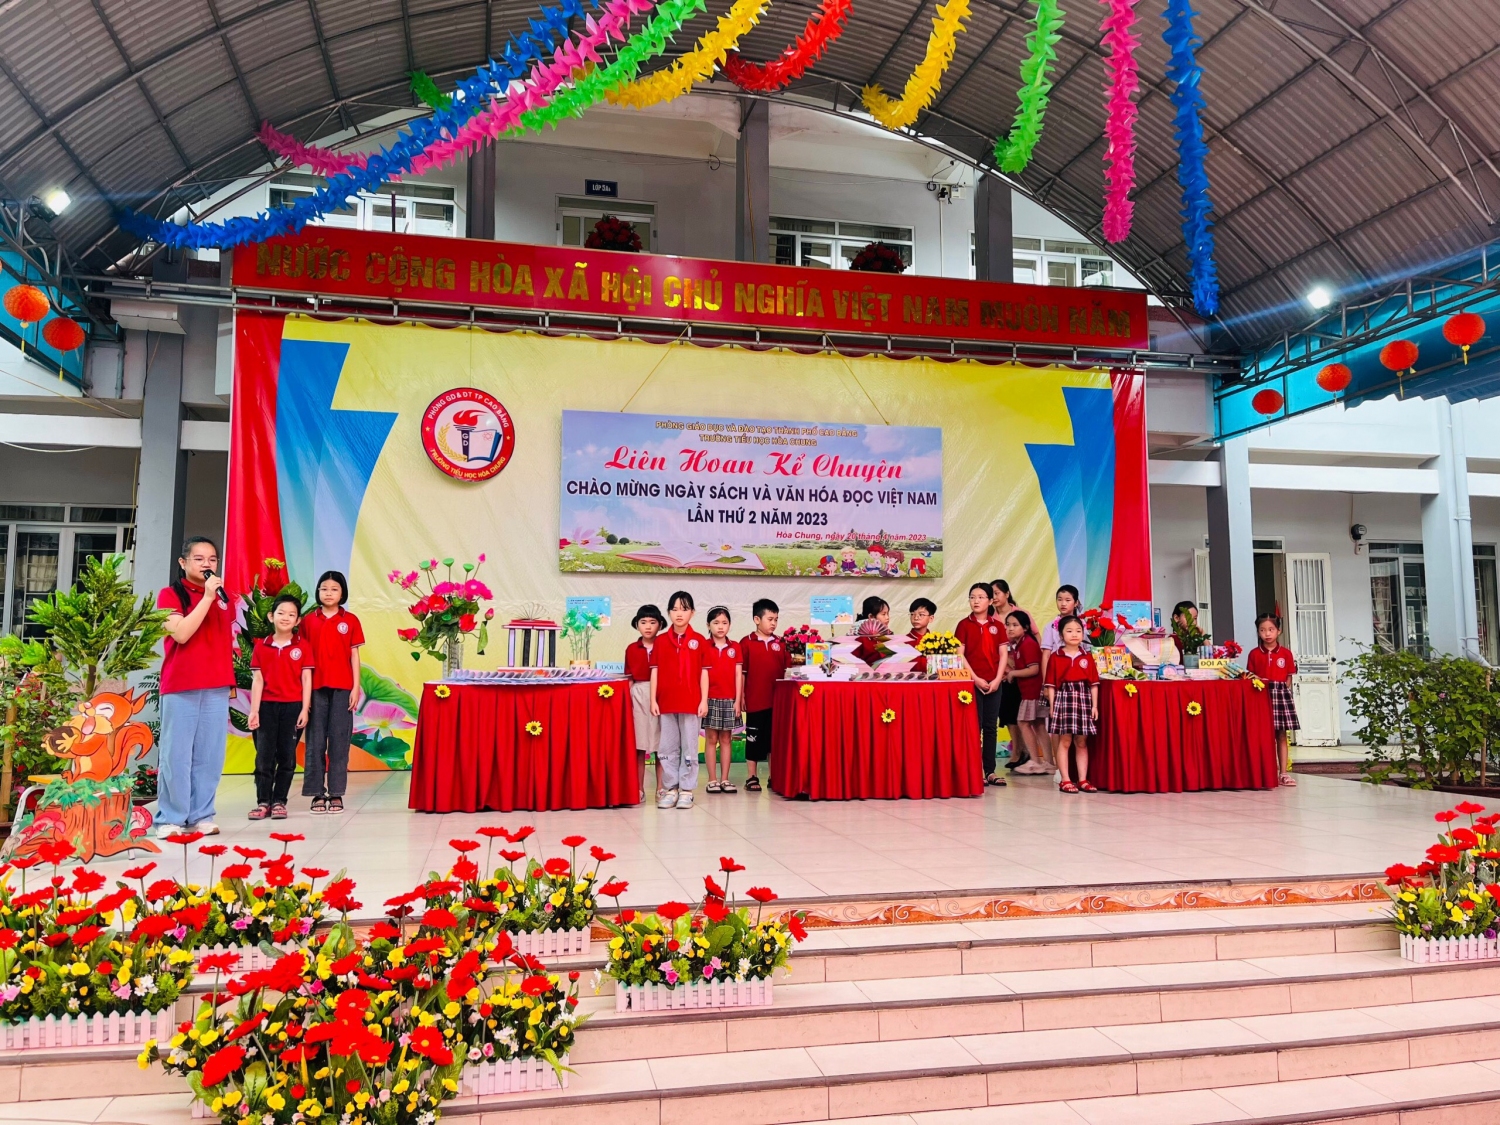 Trường Tiểu học Hòa Chung tổ chức Liên hoan Kể chuyện chào mừng Ngày sách và Văn hoá đọc Việt Nam lần thứ 2 năm 2023.